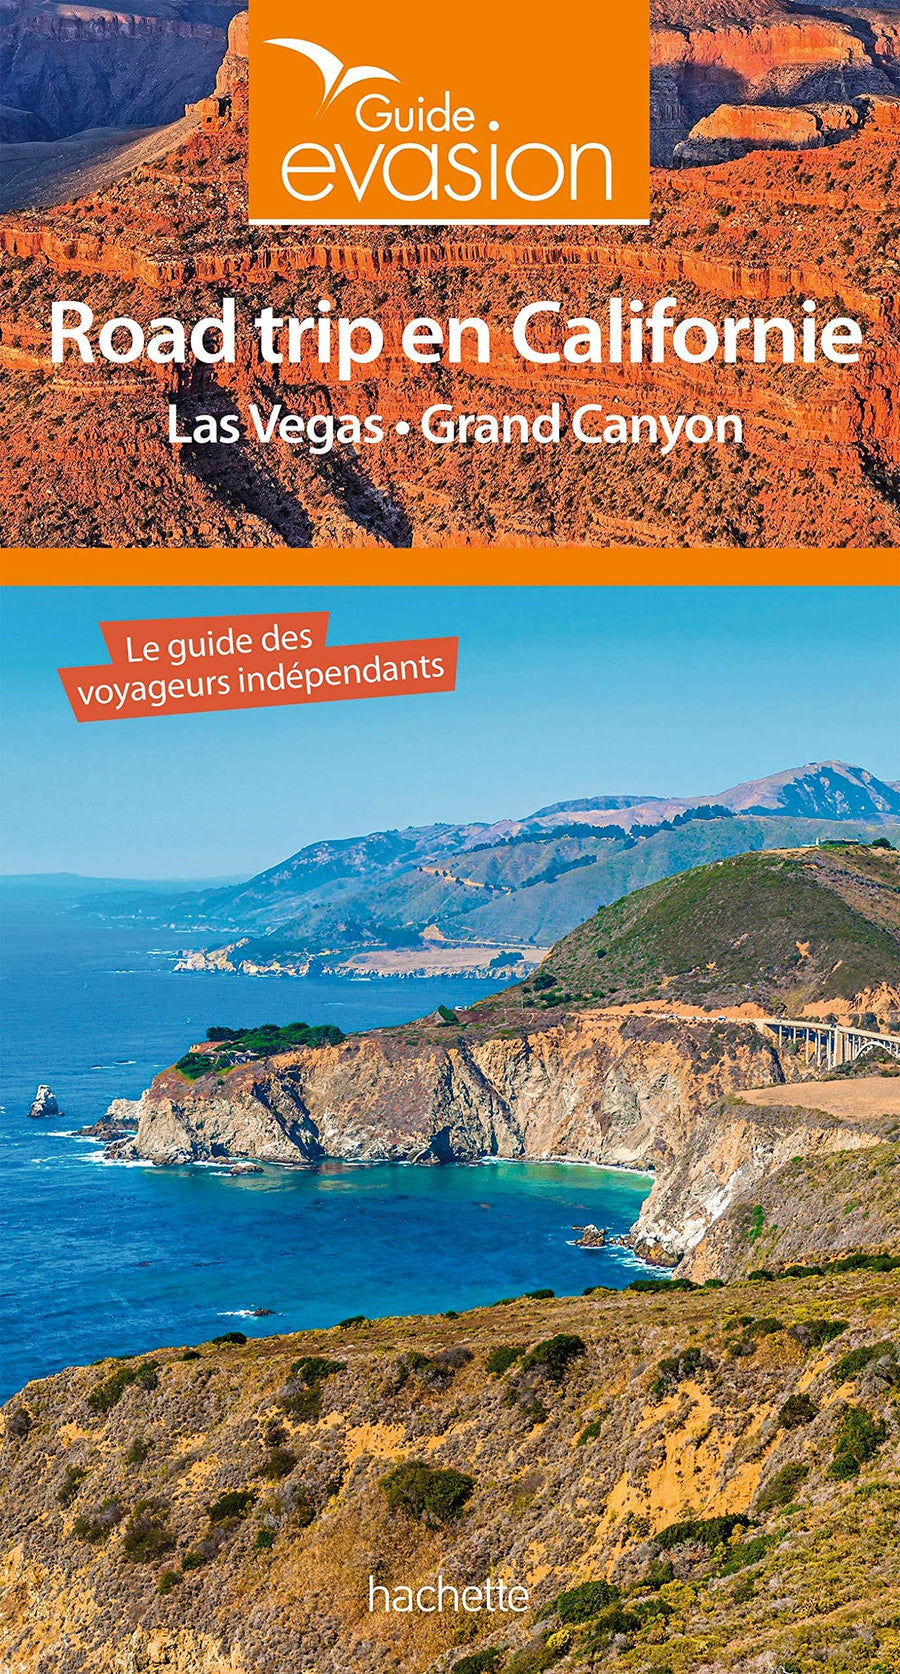 Guide Evasion - Road trip en Californie, Las Vegas et Grand Canyon | Hachette guide de voyage Hachette 